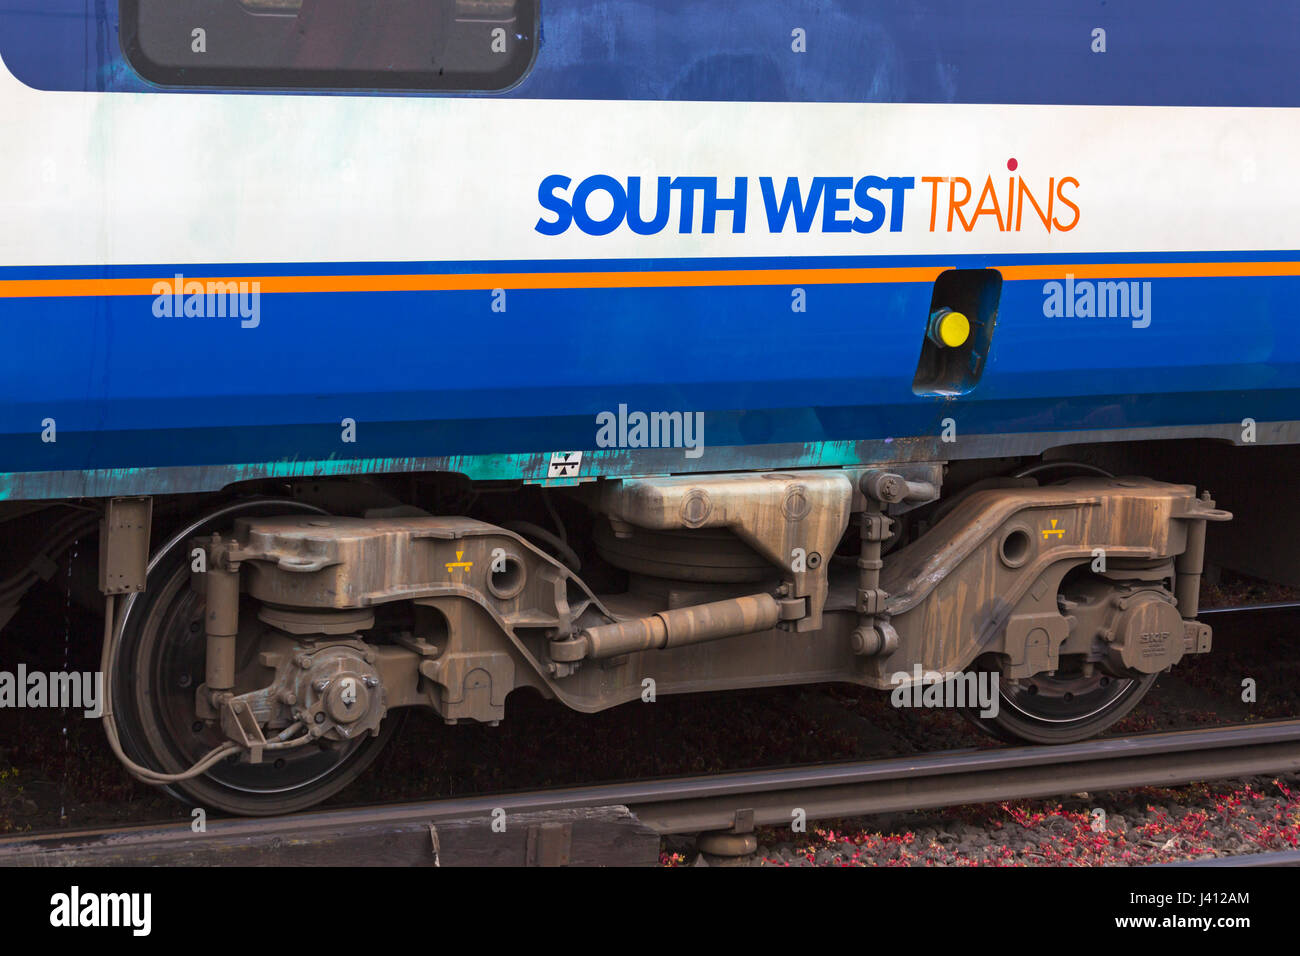 Treno South West logo sul lato del carrello del sud-ovest della stazione che mostra le ruote e freni Foto Stock